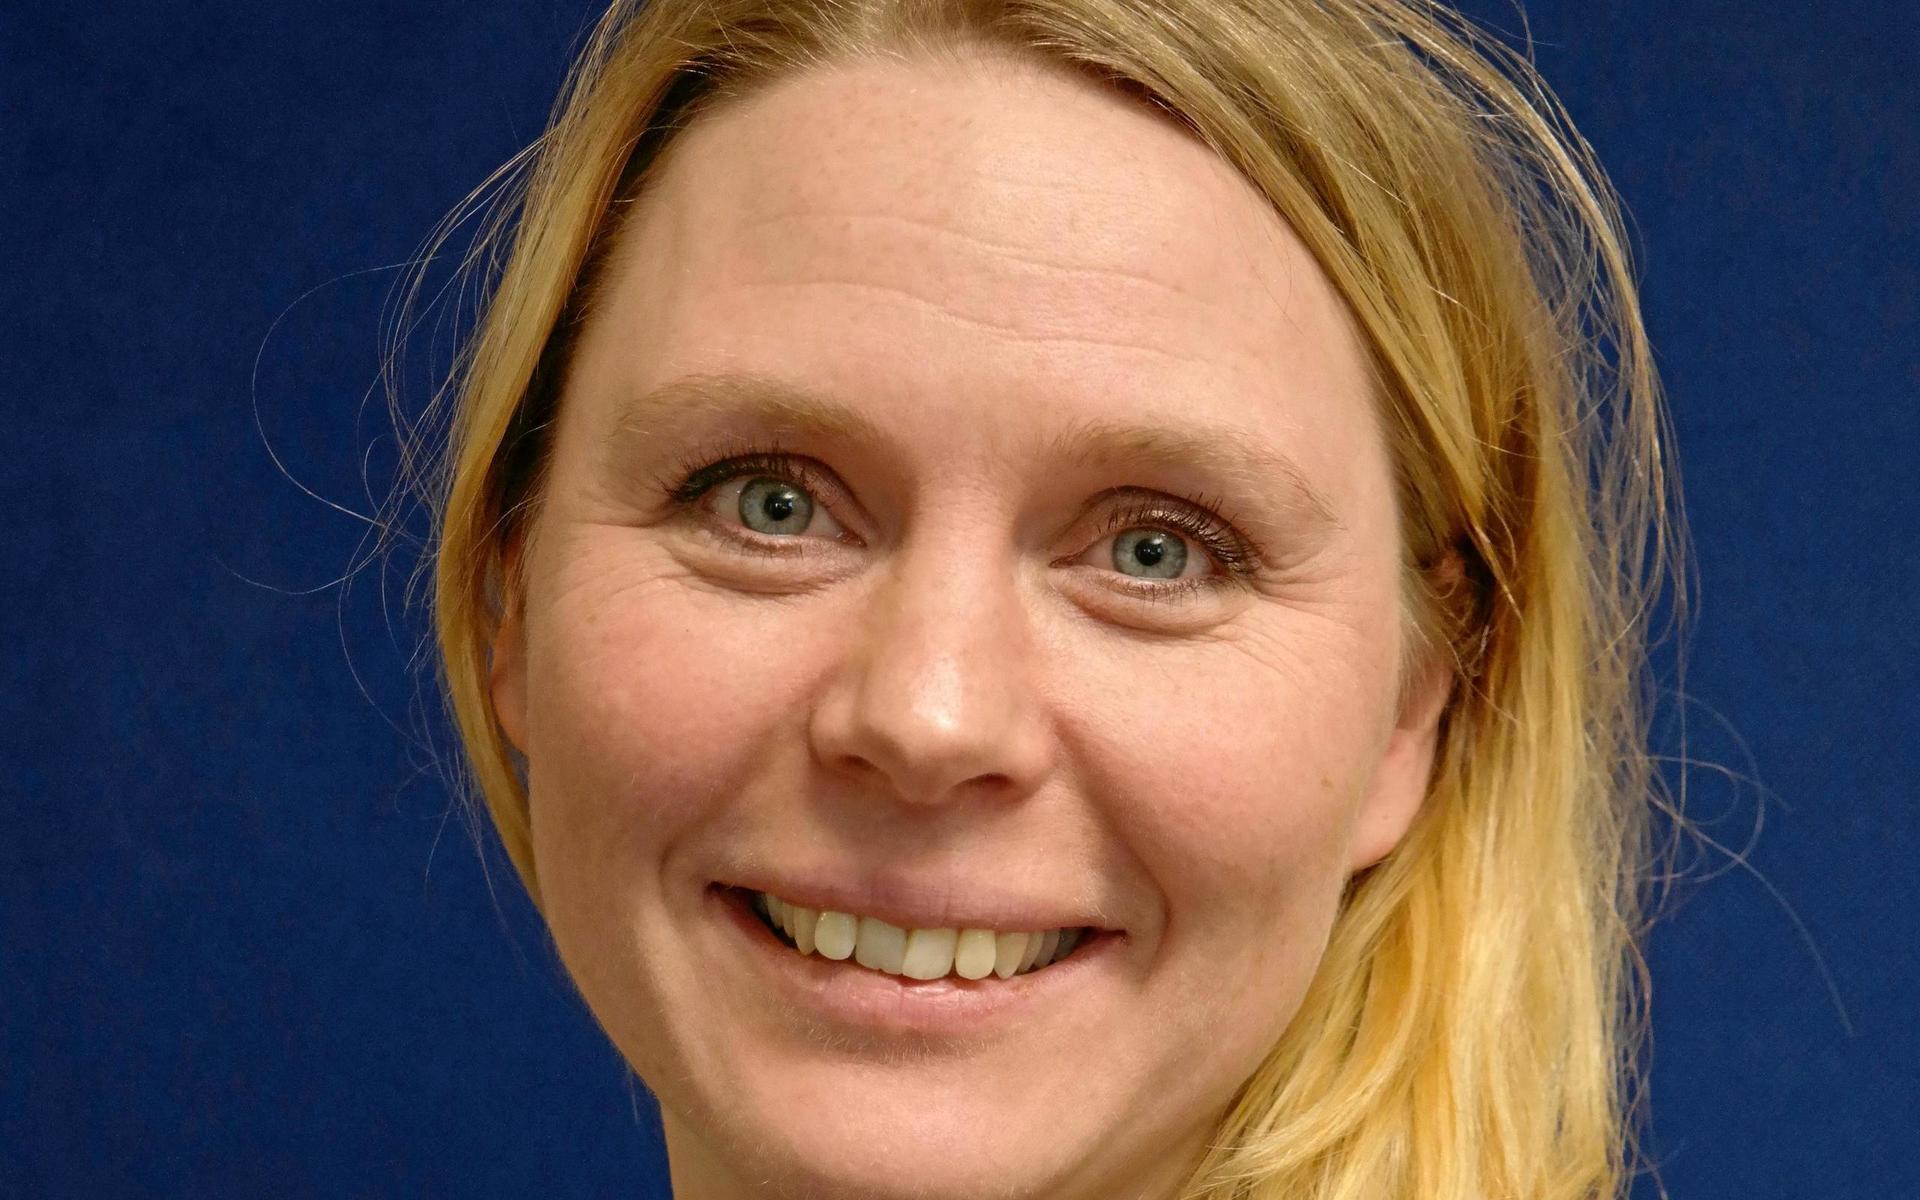 Magdalena Hellgren, säkerhetschef på Essity angående att ställa krav på vaccinering: ”Nej, vi ser inte att det är ett befogat krav i en industriverksamhet.”